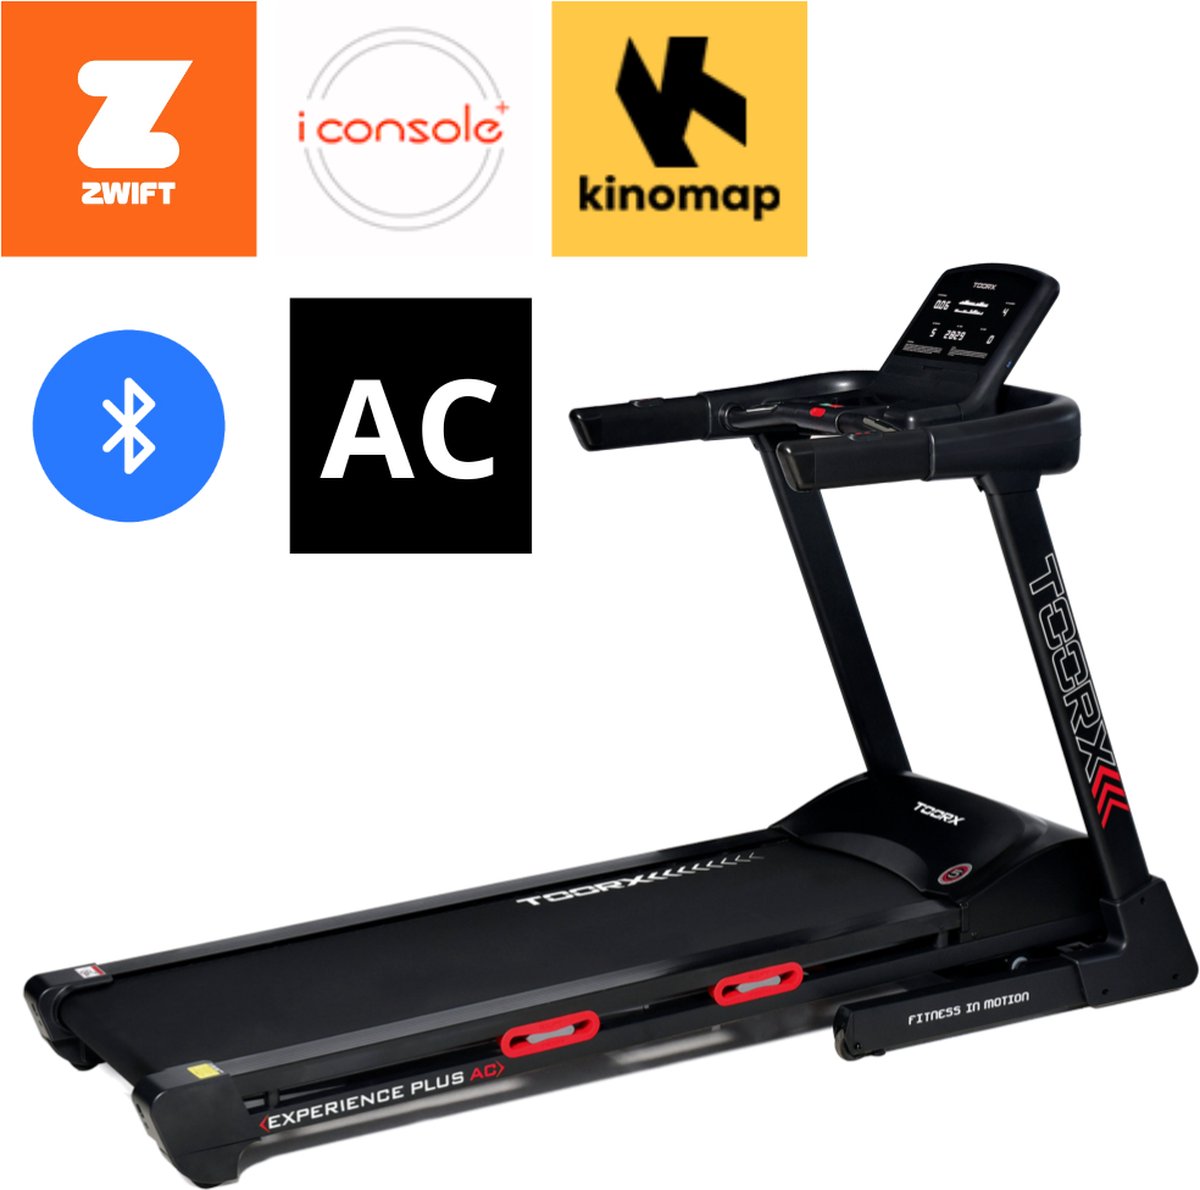 Toorx Fitness Experience Plus AC - Loopband - met AC Motor - Inklapbaar - 38 trainingsprogramma's - met Zwift en Kinomap - inclusief hartslagmeter